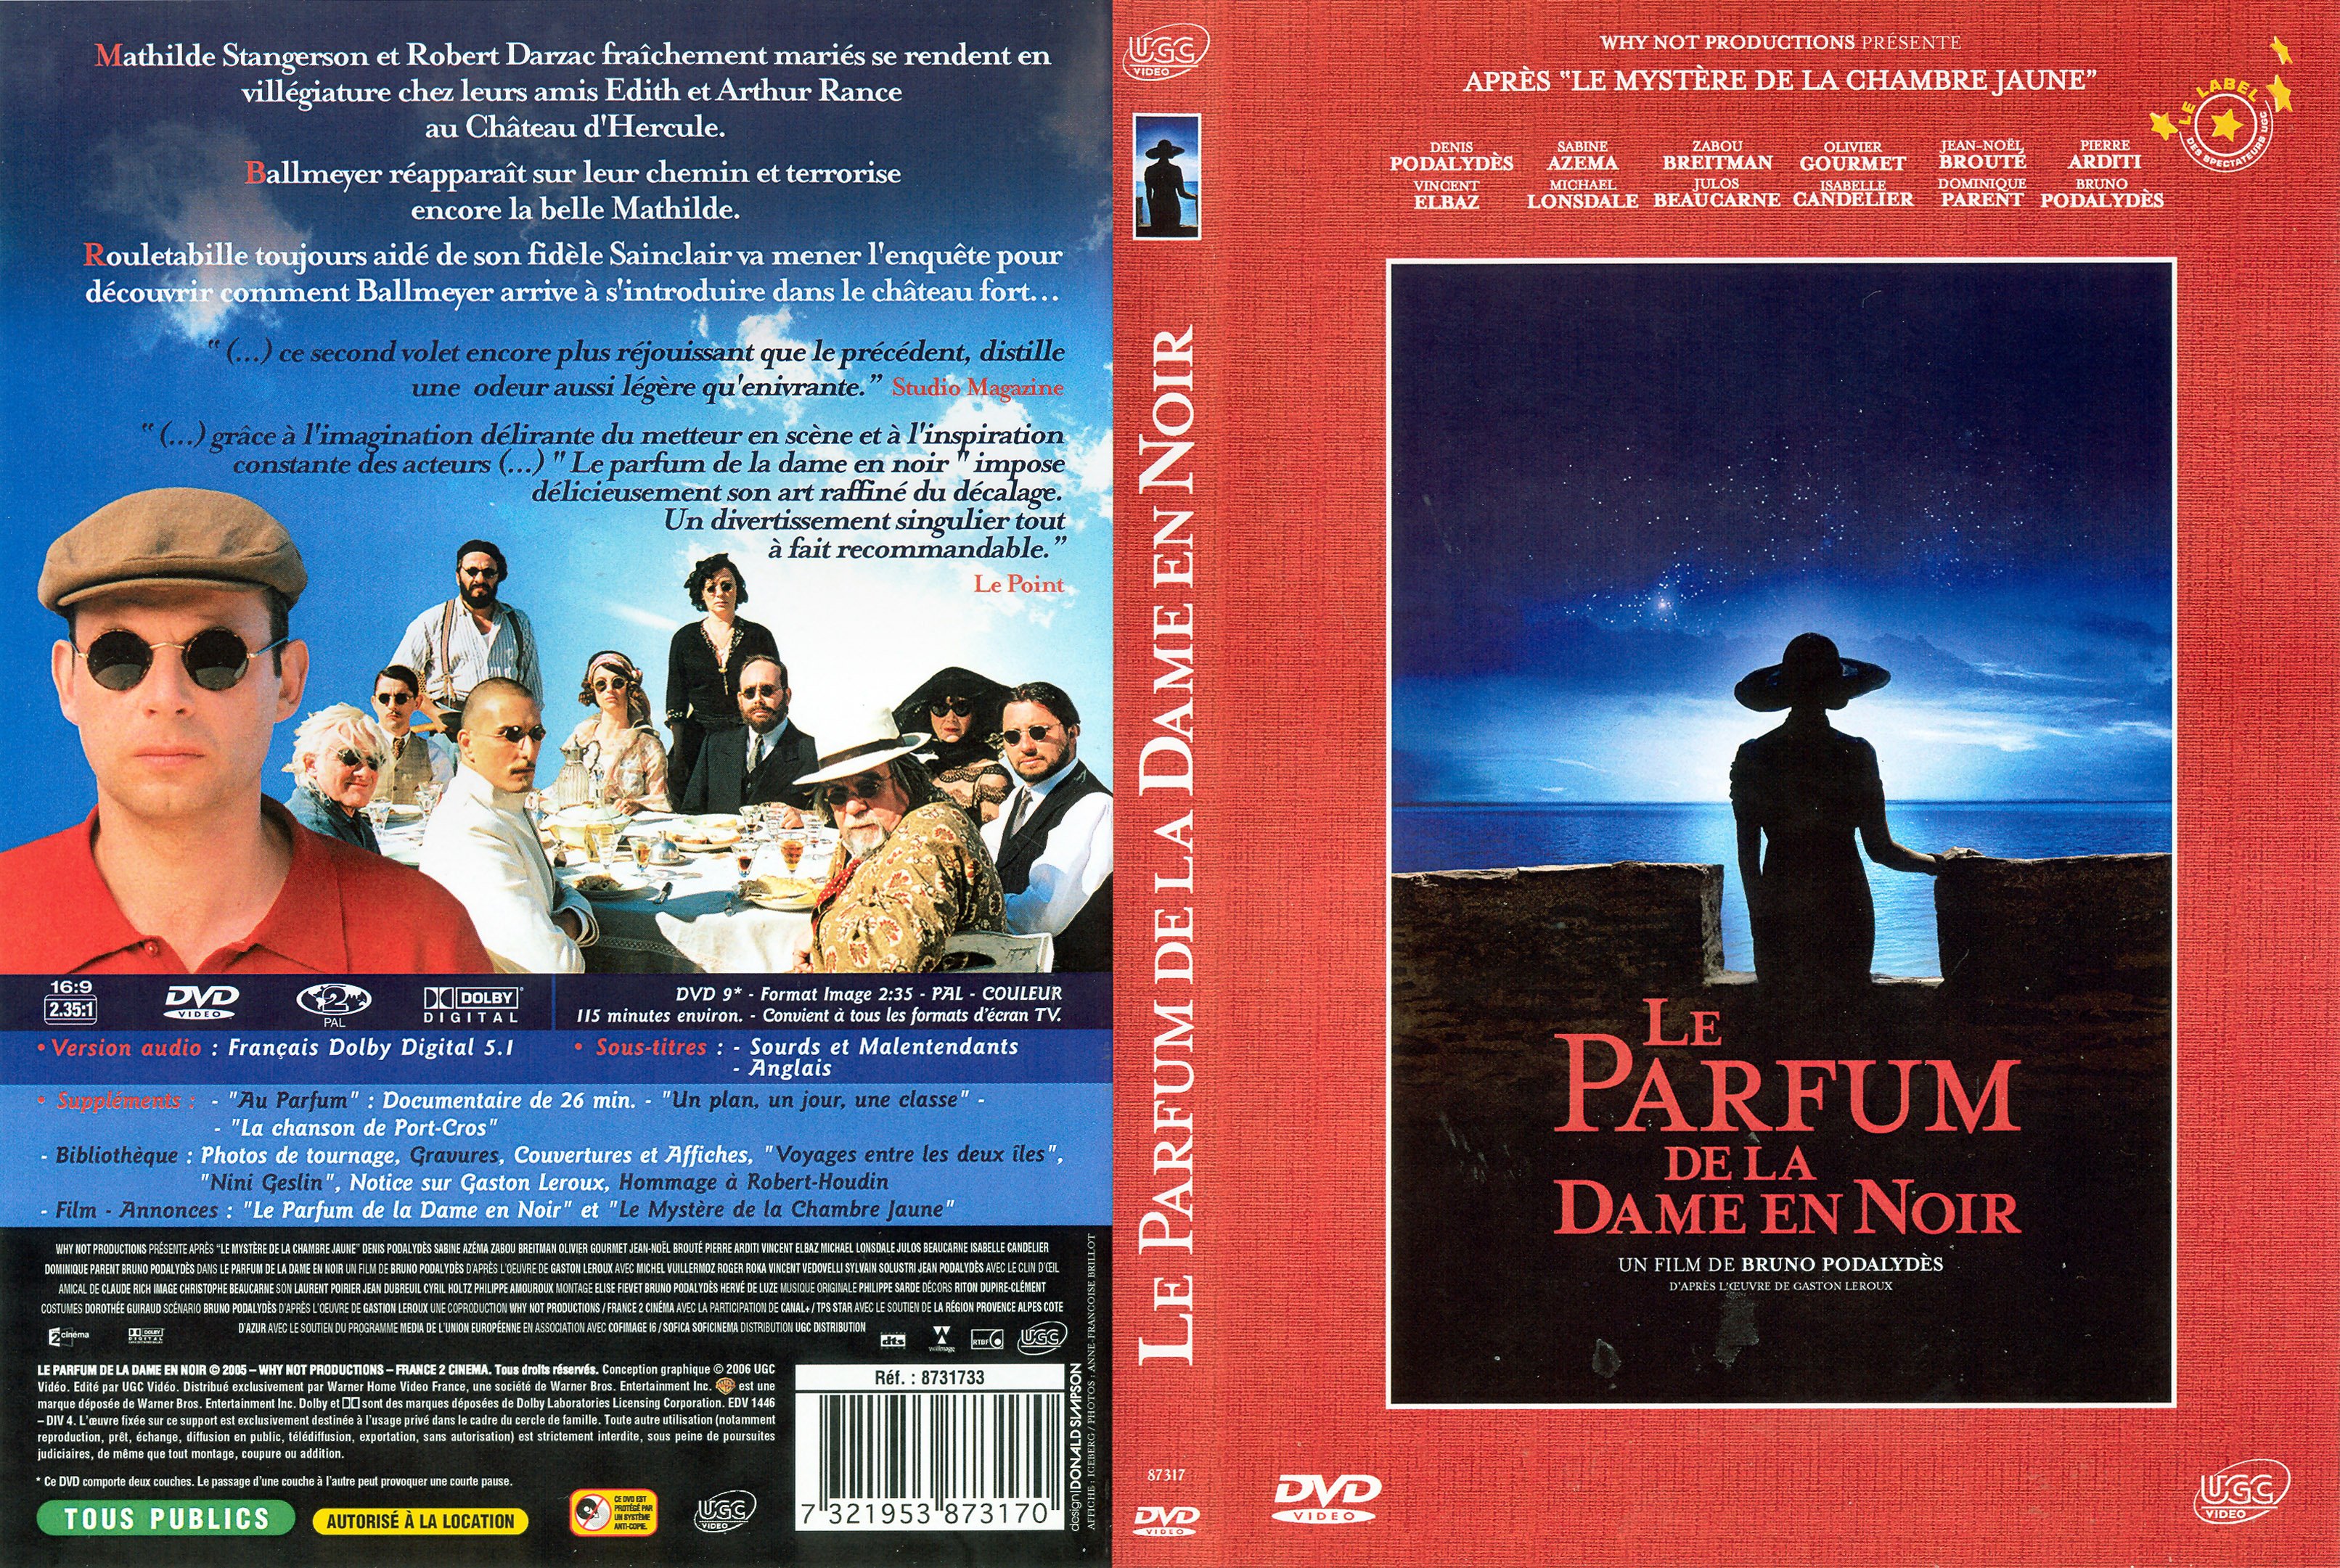 Jaquette DVD de Le parfum de la dame en noir Cinéma Passion